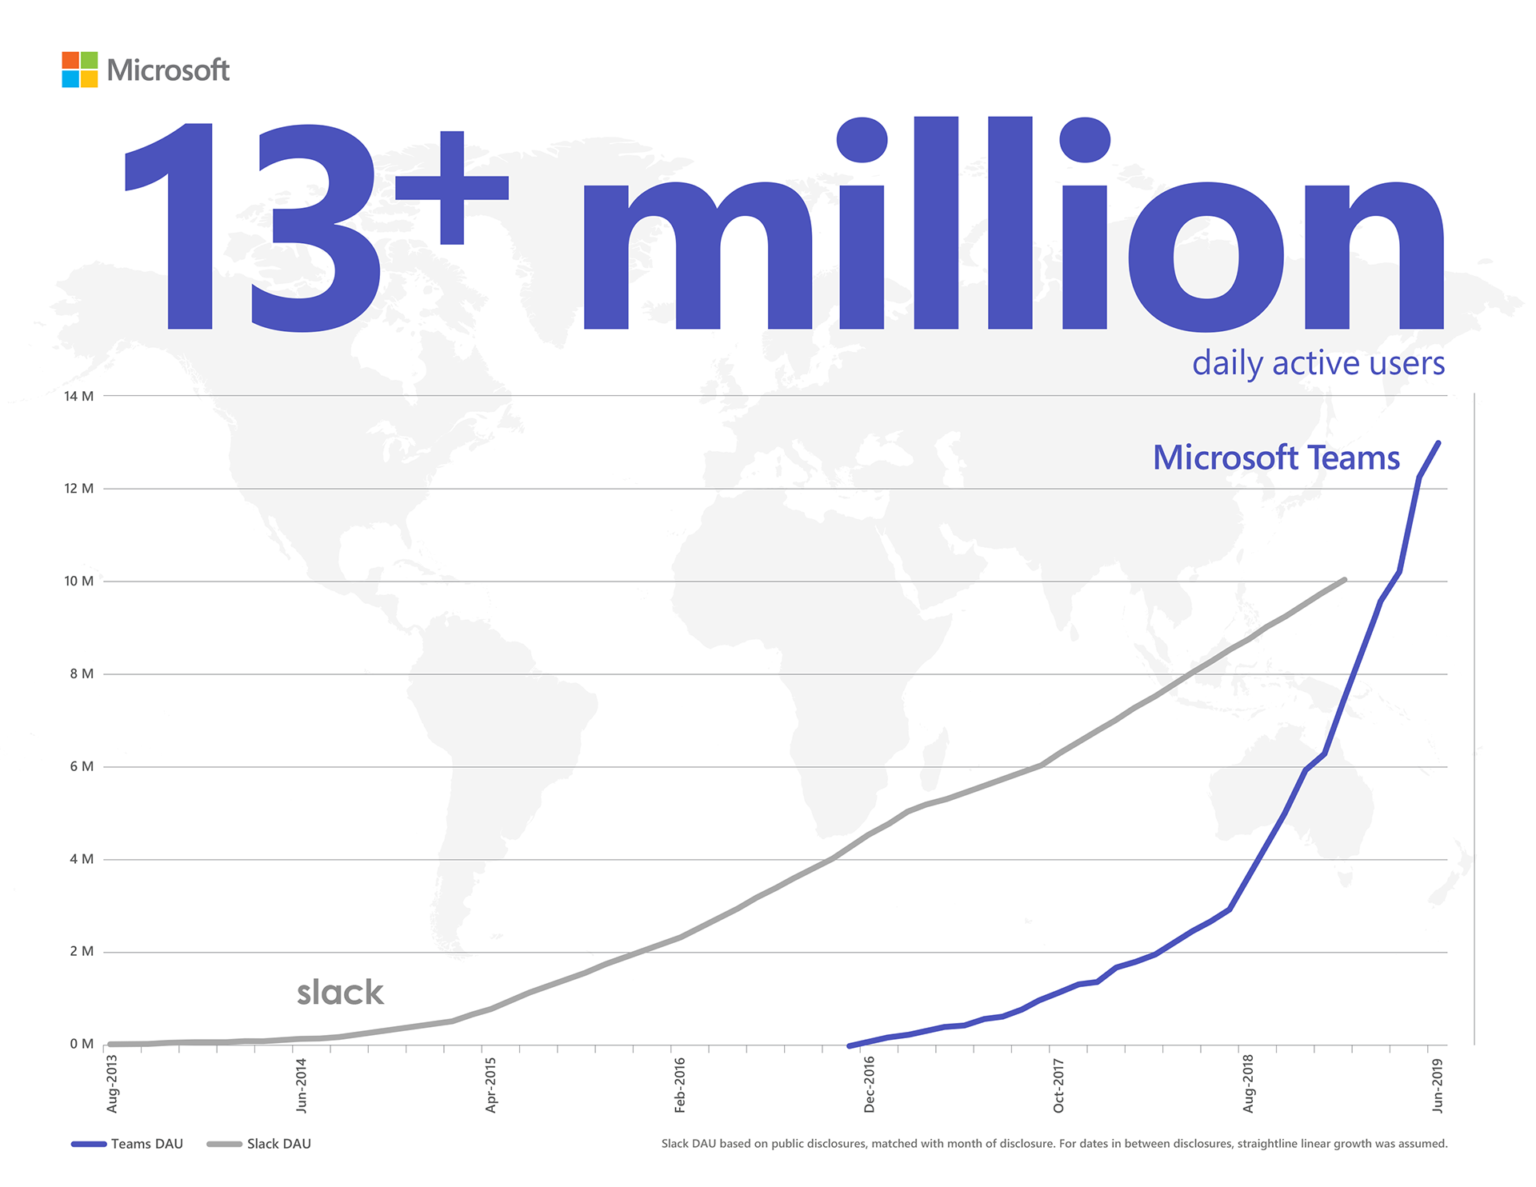 Infografika ilustrująca prześcignięcie usługi Slack przez usługę Microsoft Teams pod względem liczby codziennie aktywnych użytkowników (ponad 13 milionów w przypadku tej ostatniej). Liczba codziennie aktywnych użytkowników usługi Slack jest oparta na danych podanych publicznie i powiązana z miesiącem ujawnienia danych. Dla okresów między datami ujawnienia danych przyjęto prosty wzrost liniowy.